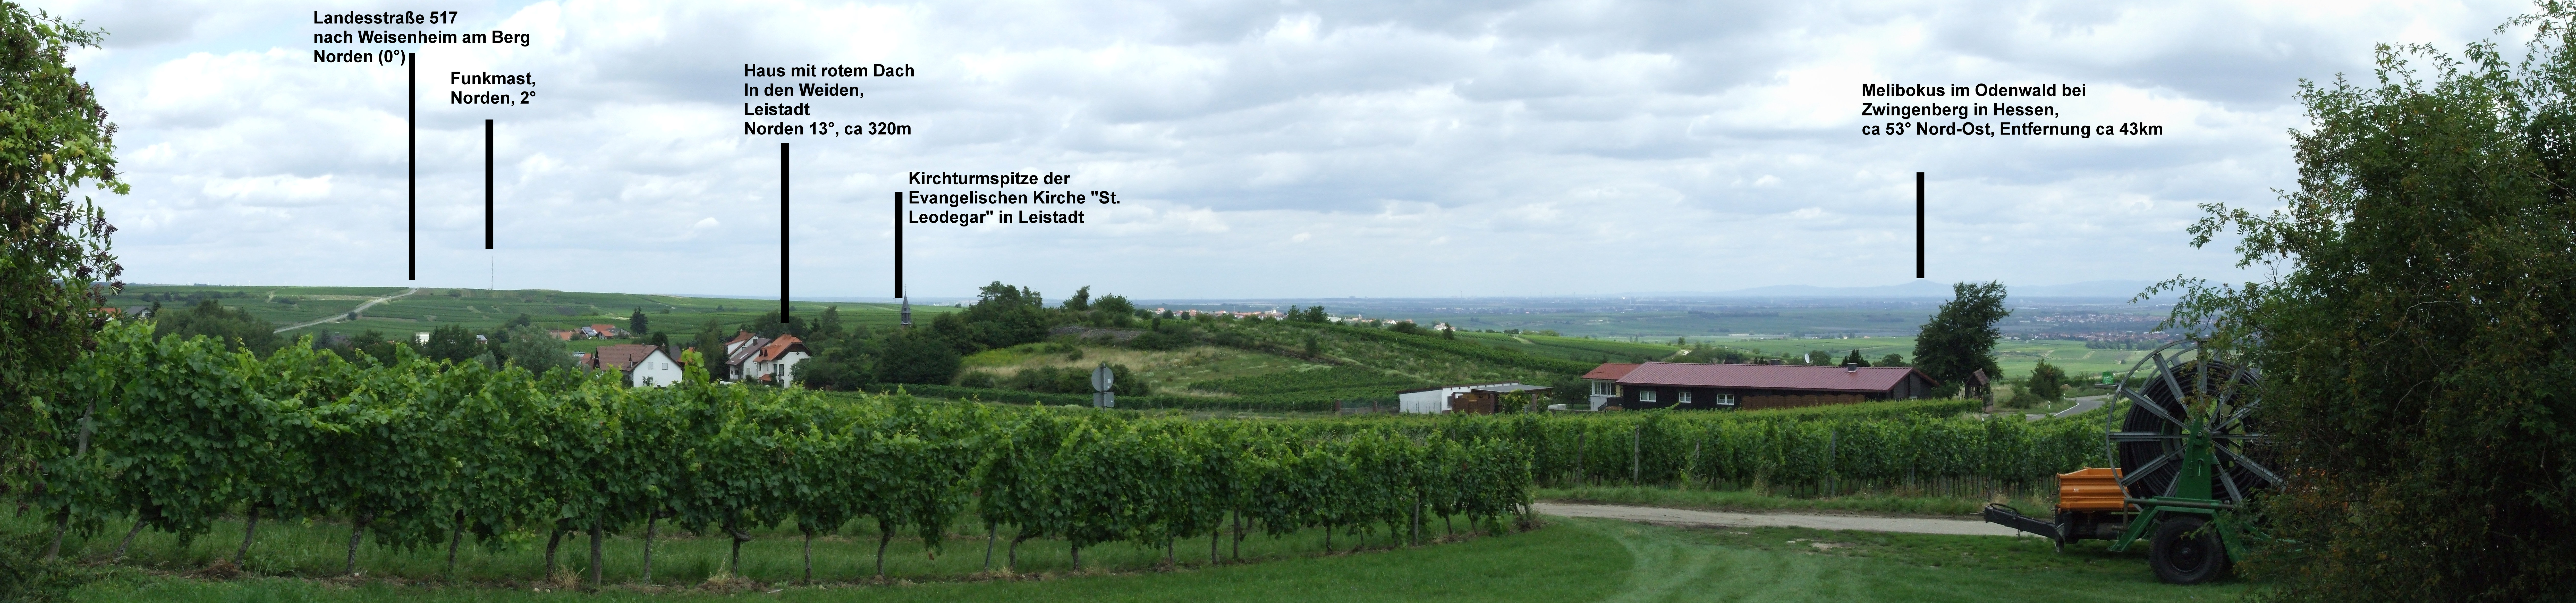 Datei:Leistadt Landesstrasse 518 Panorama dscf1581-dscf1593 mit Beschriftung.jpg